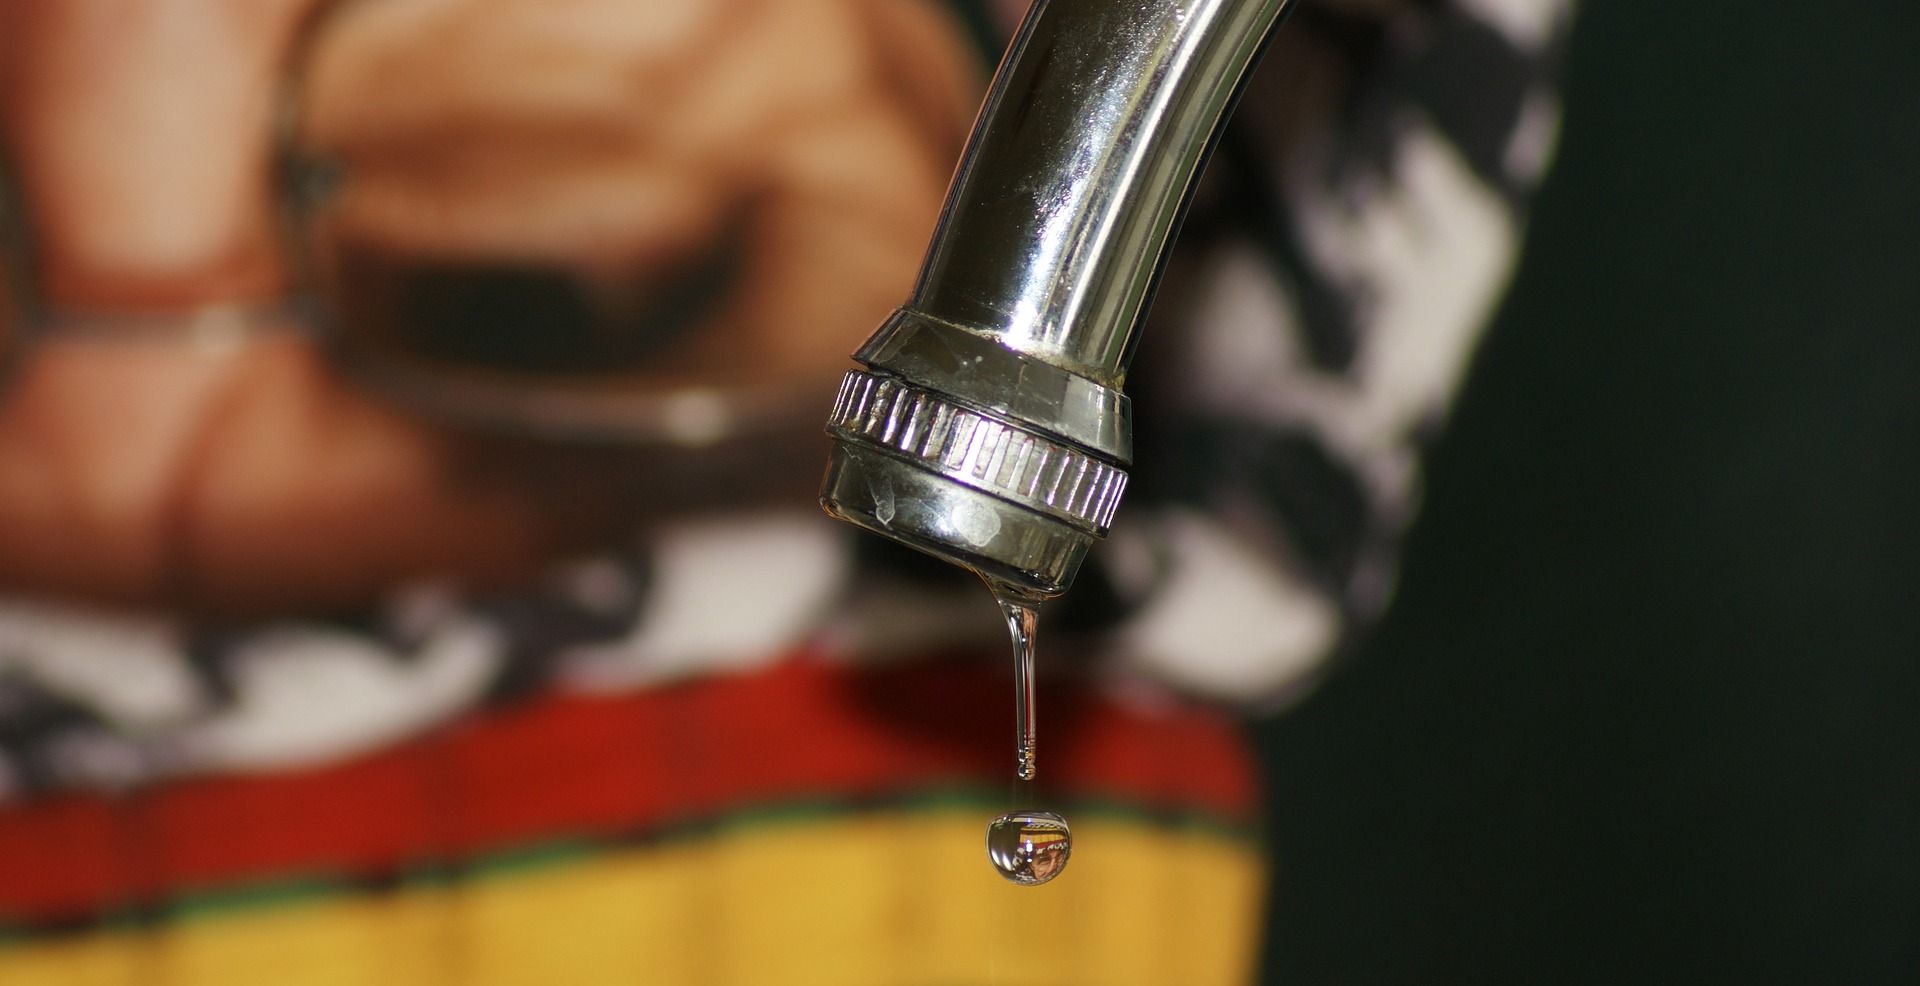 faucet 2414460 1920 - Leaking Tap Repairs